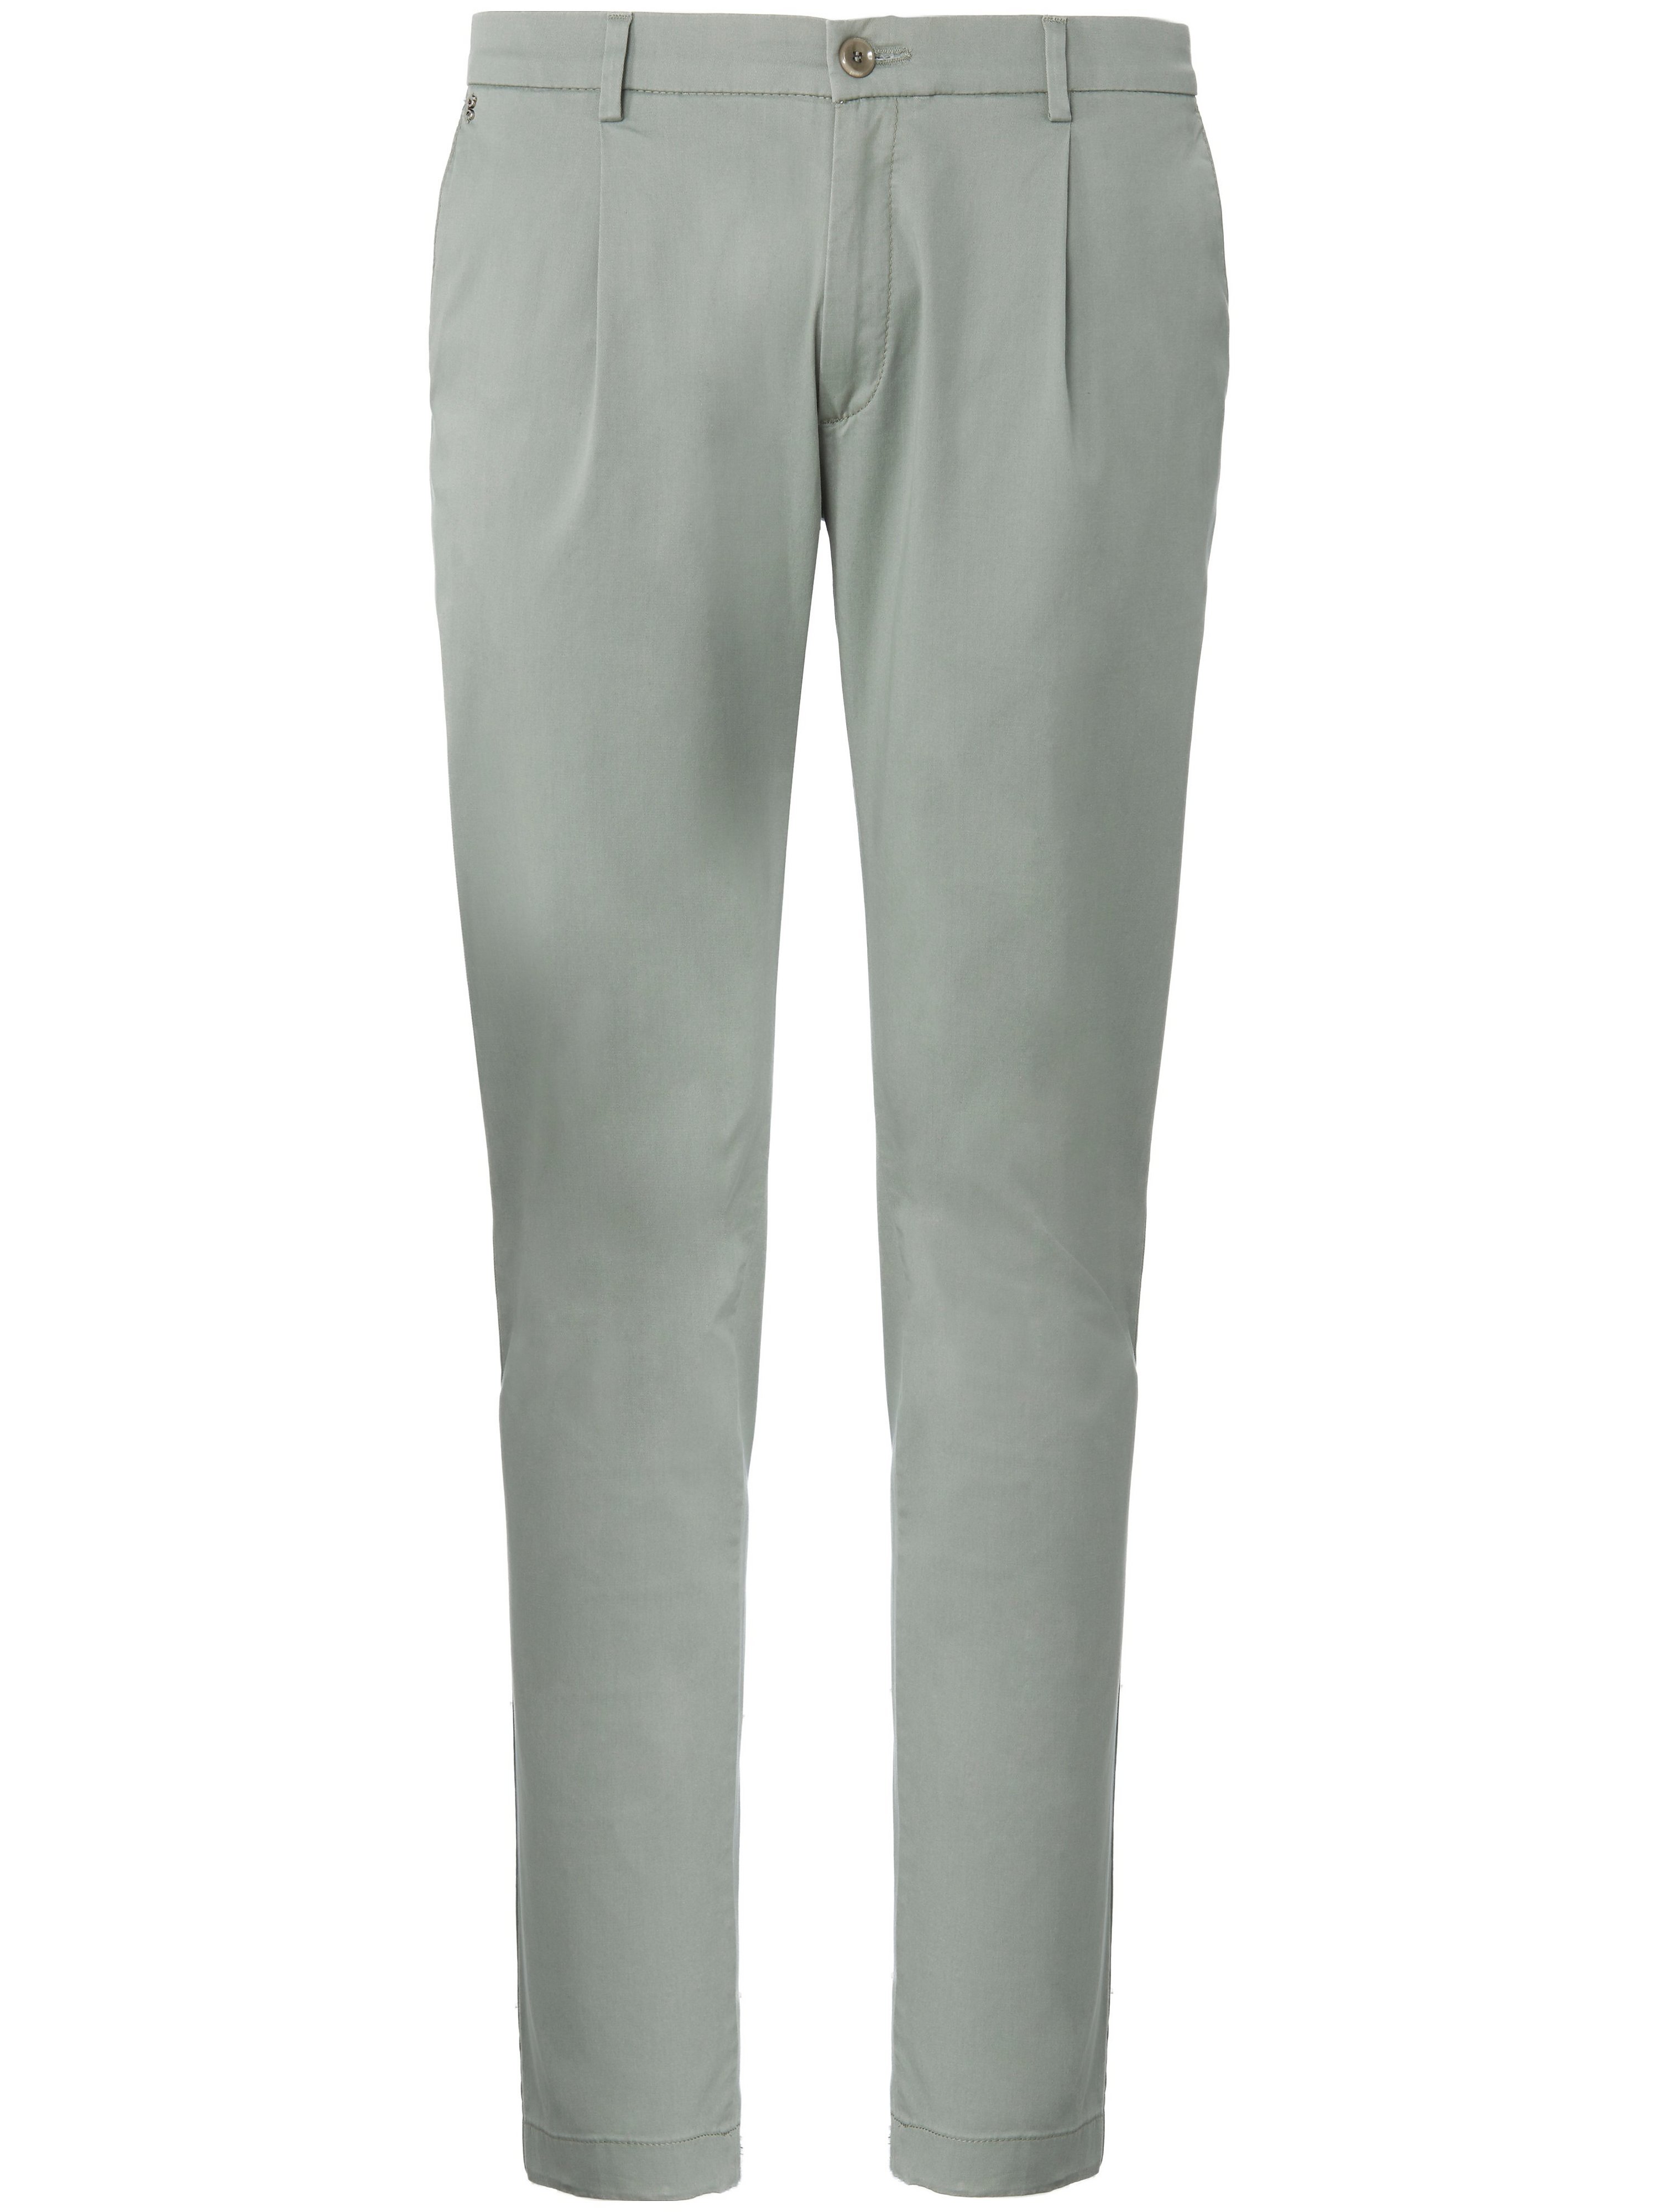 Le pantalon à pinces modèle Sergio  gardeur vert taille 50